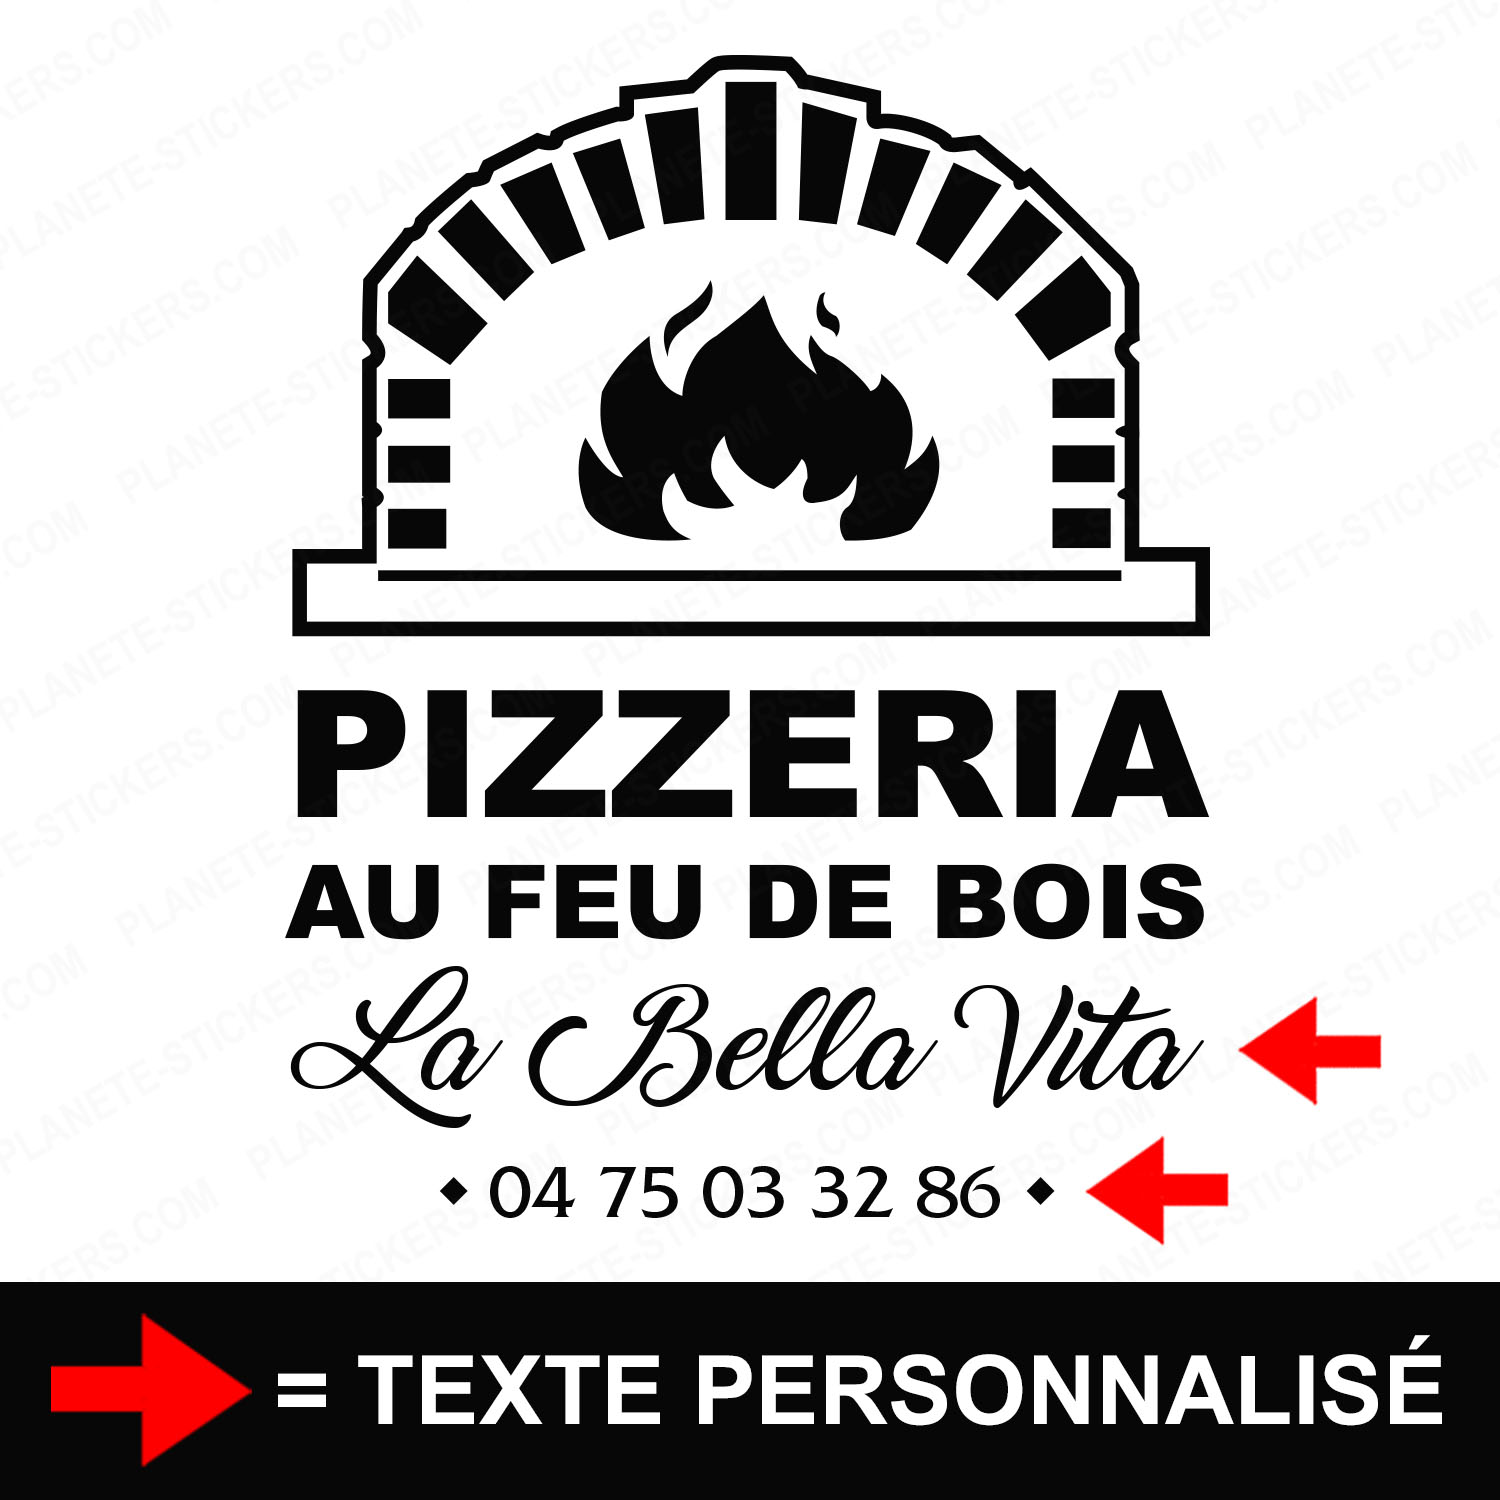 ref9pizzeriavitrine-stickers-pizzeria-au-feu-de-bois-vitrine-pizza-restaurant-sticker-personnalisé-autocollant-pro-restaurateur-vitre-resto-professionnel-logo-four-2